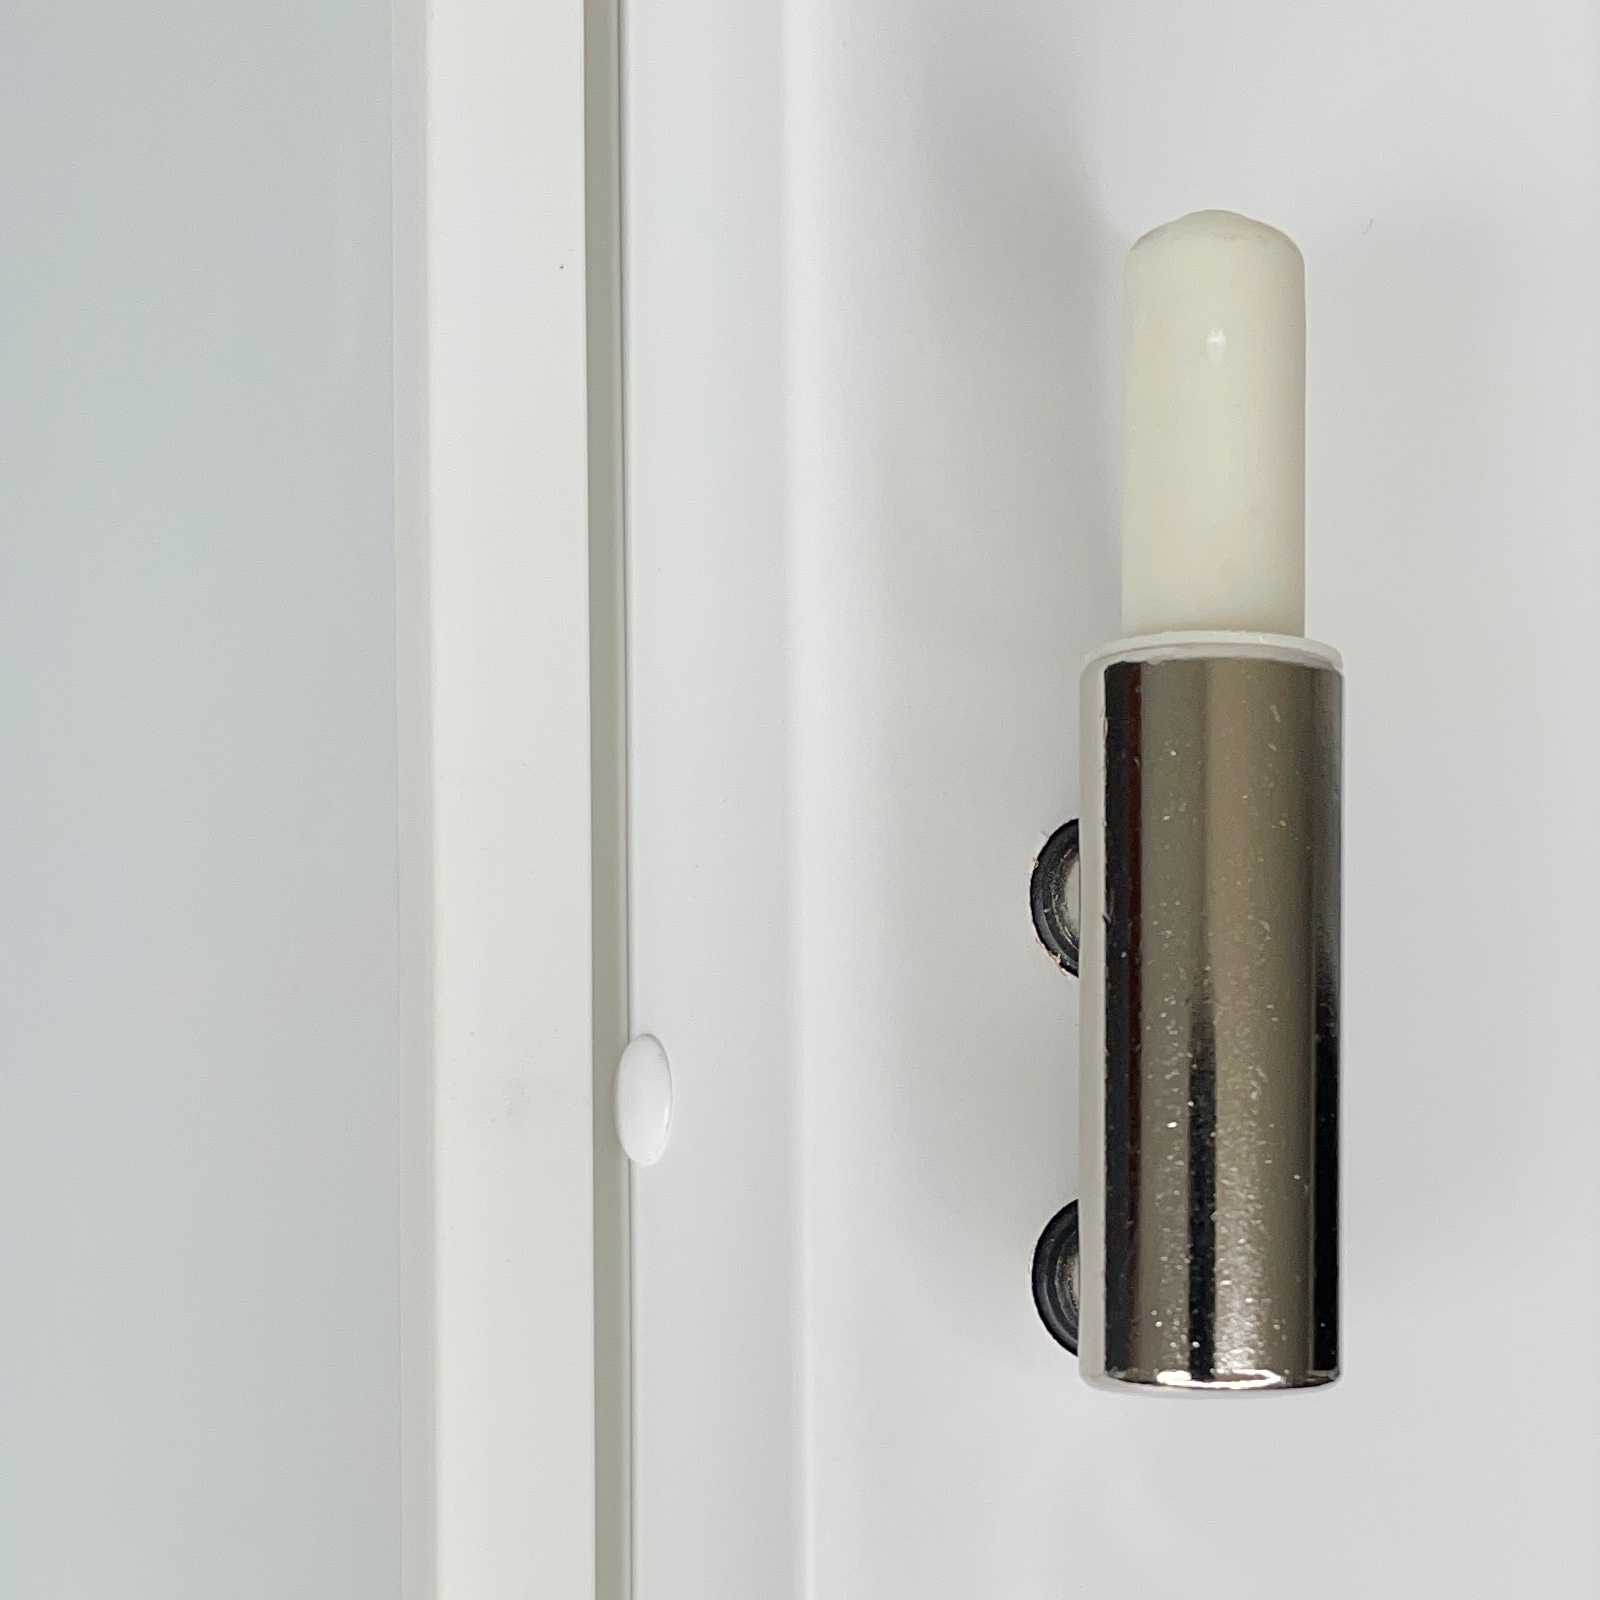 Zimmertür mit Zarge und Lichtausschnitt CPL glatt brillant-weiß Designkante